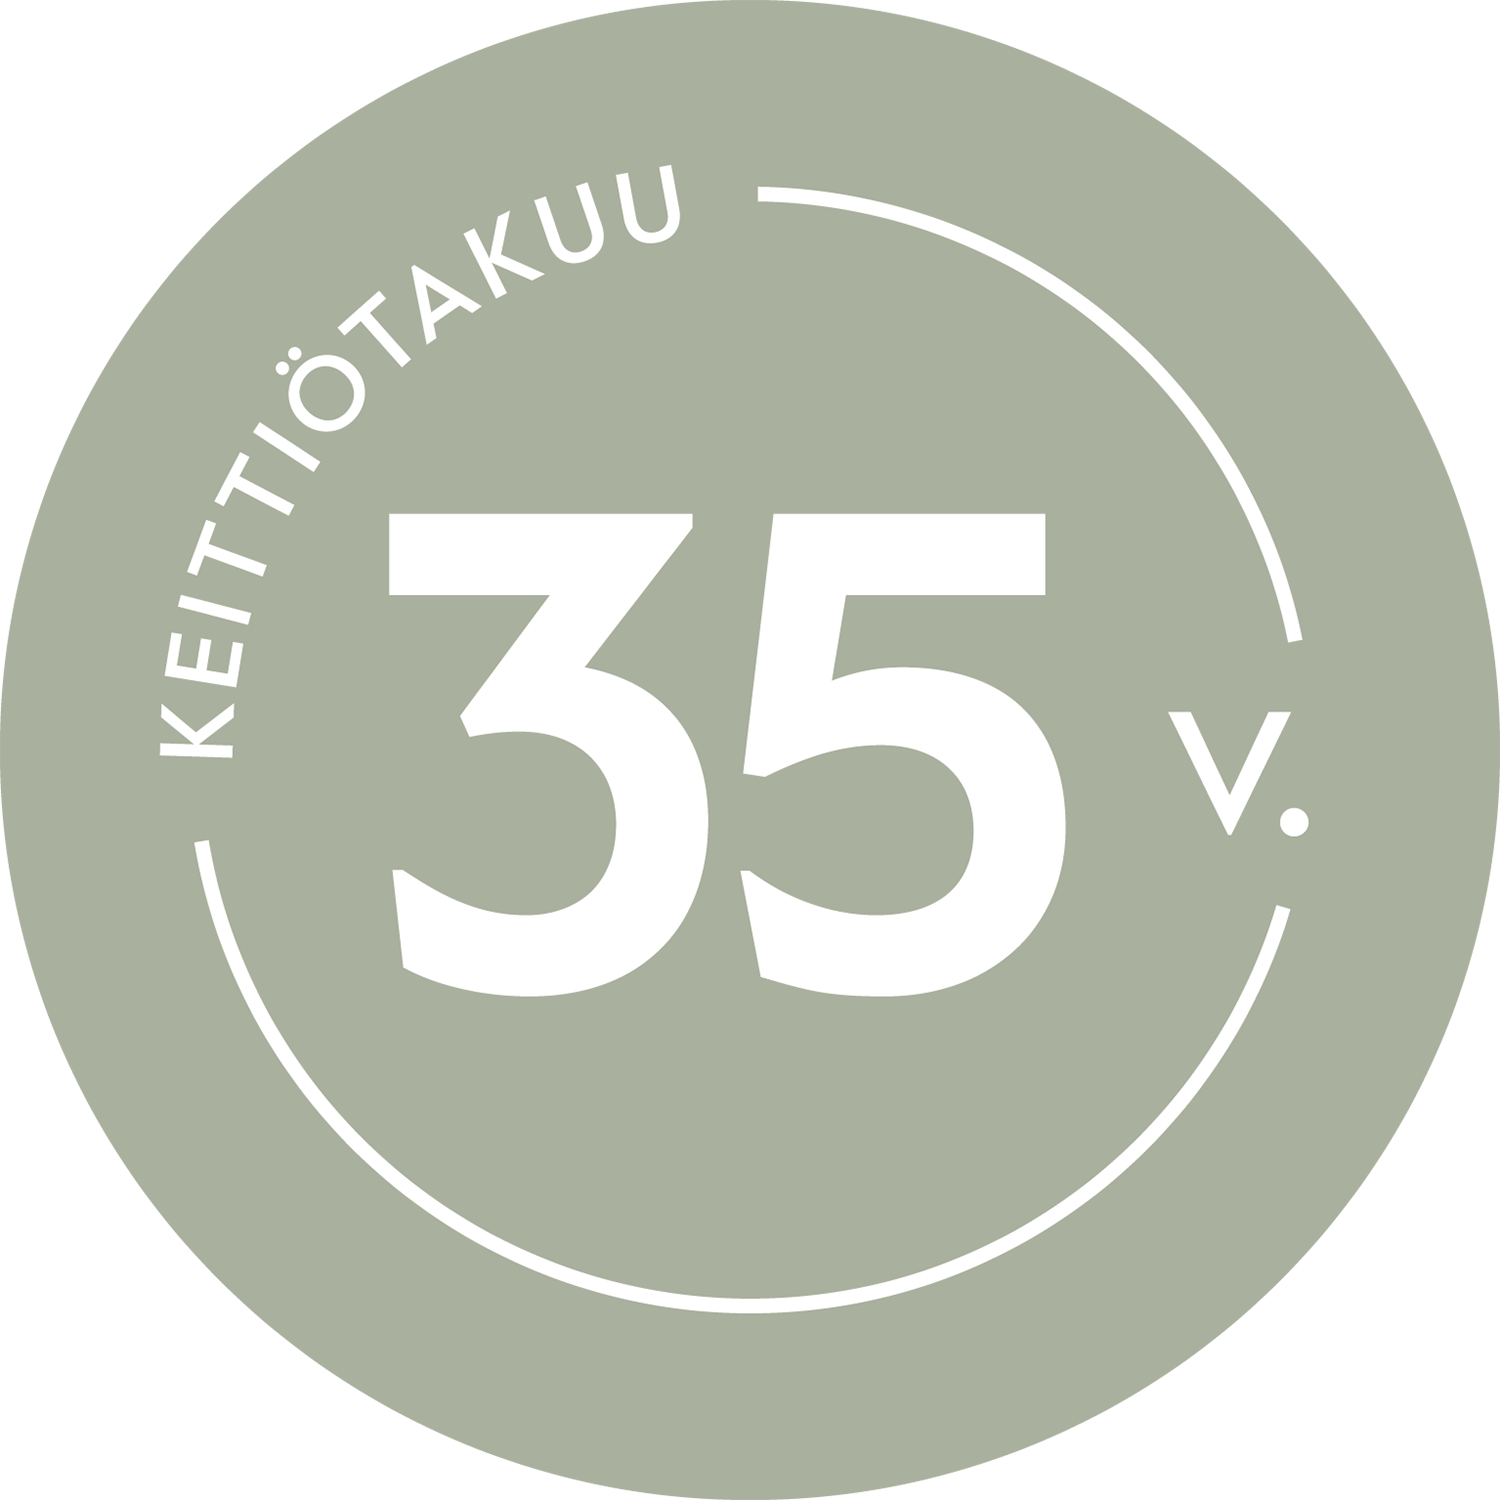 Epoq 35-vuoden keittiötakuun logo